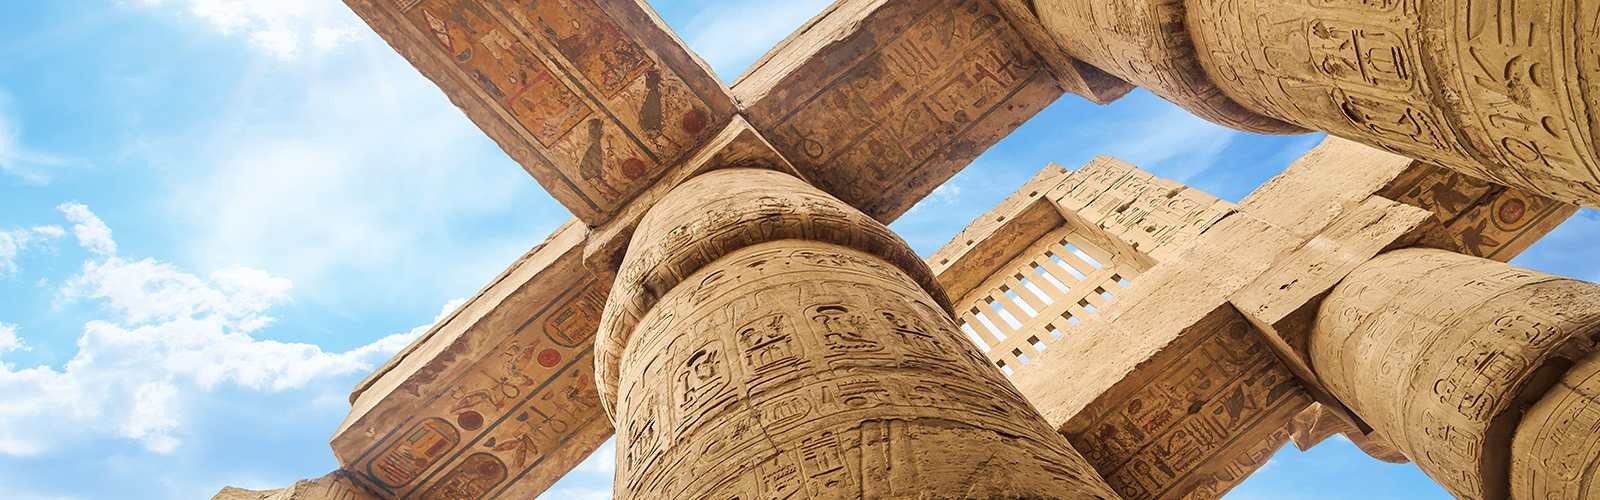 Templo de Karnak em Luxor, Egito